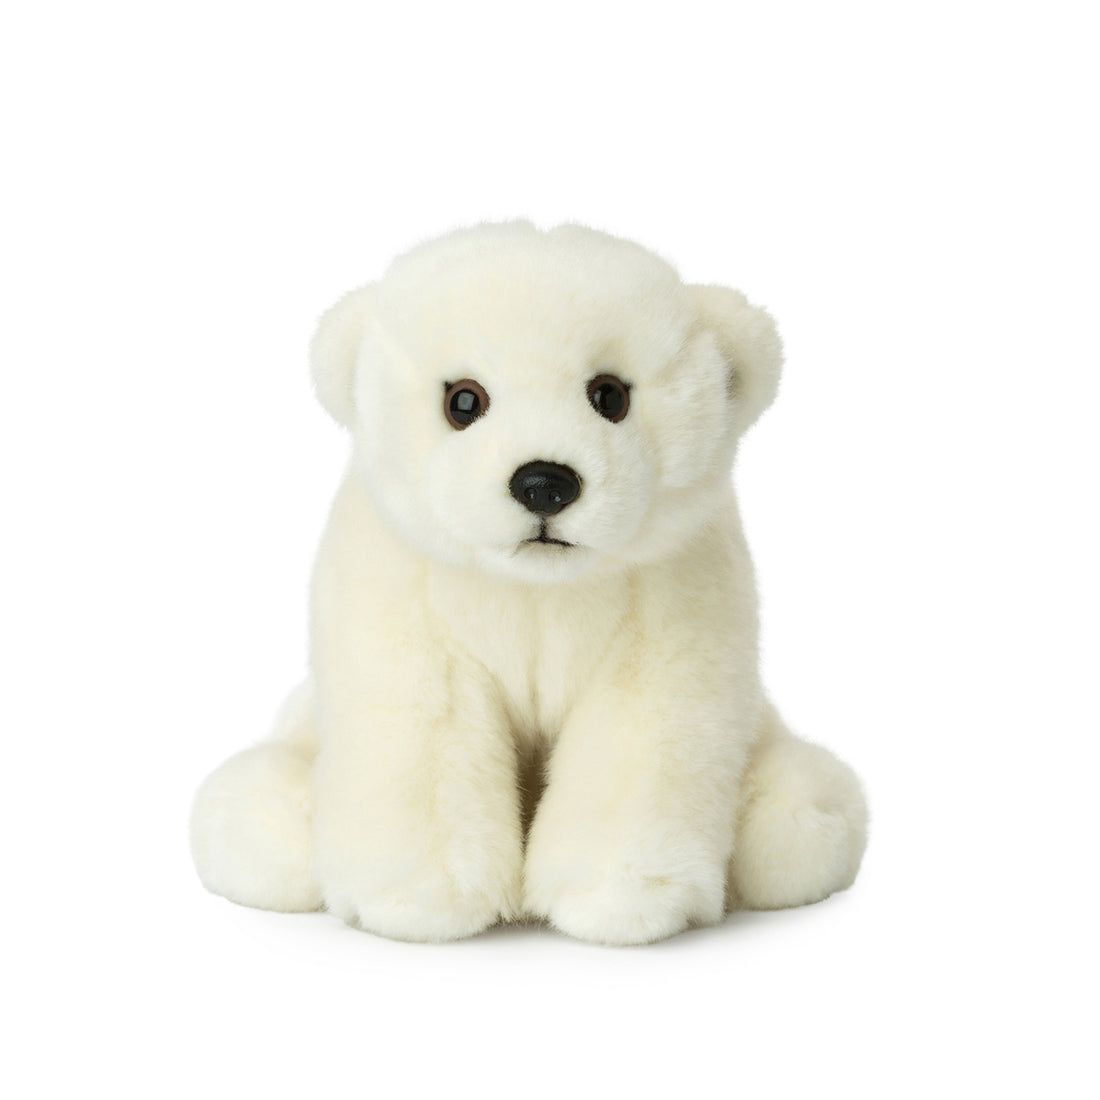 wwf-polar-bear-floppy-15cm-wwf-15187001- (1)